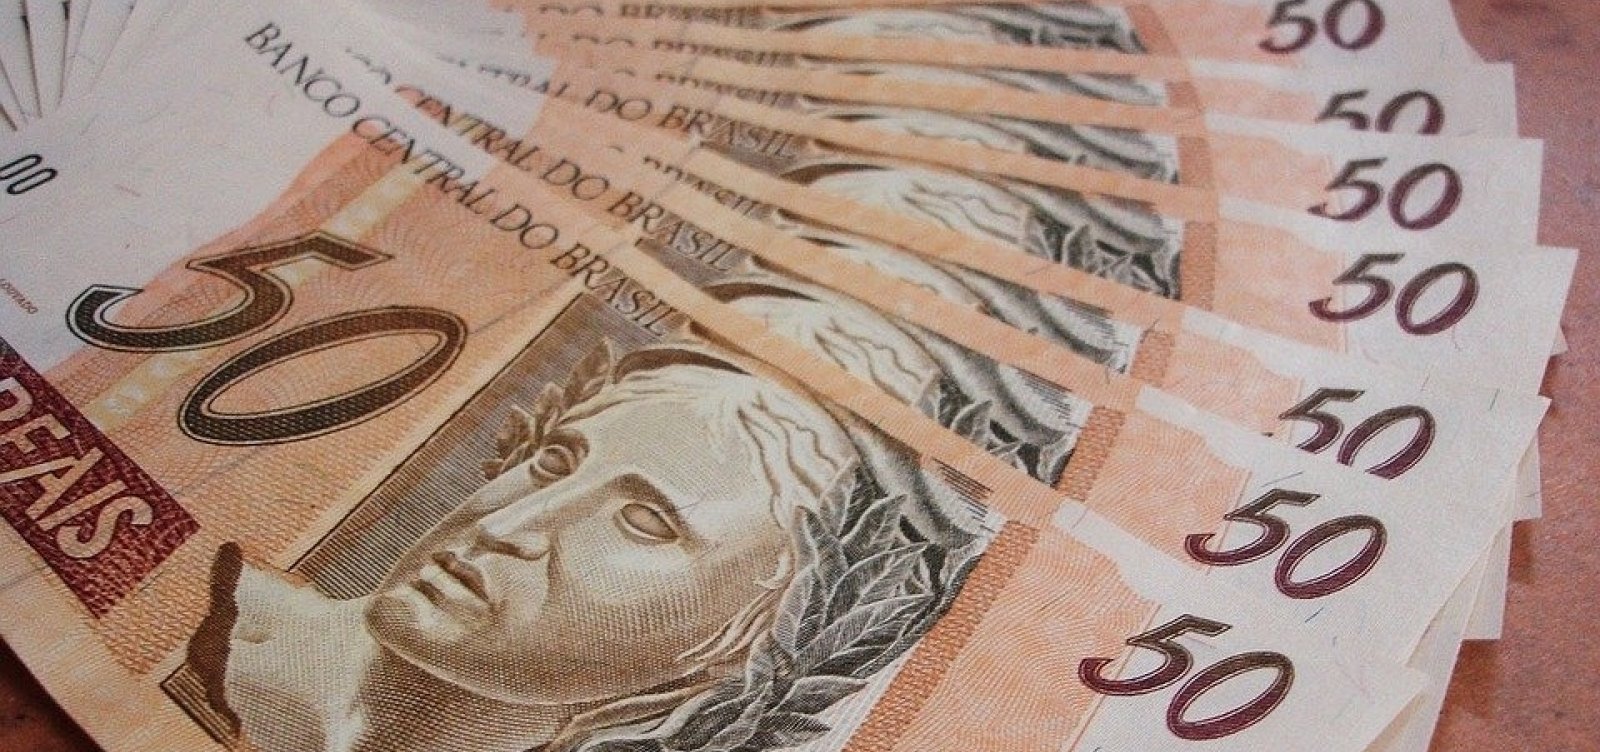 Arrecadação soma R$ 119,9 bilhões, maior em cinco anos para junho